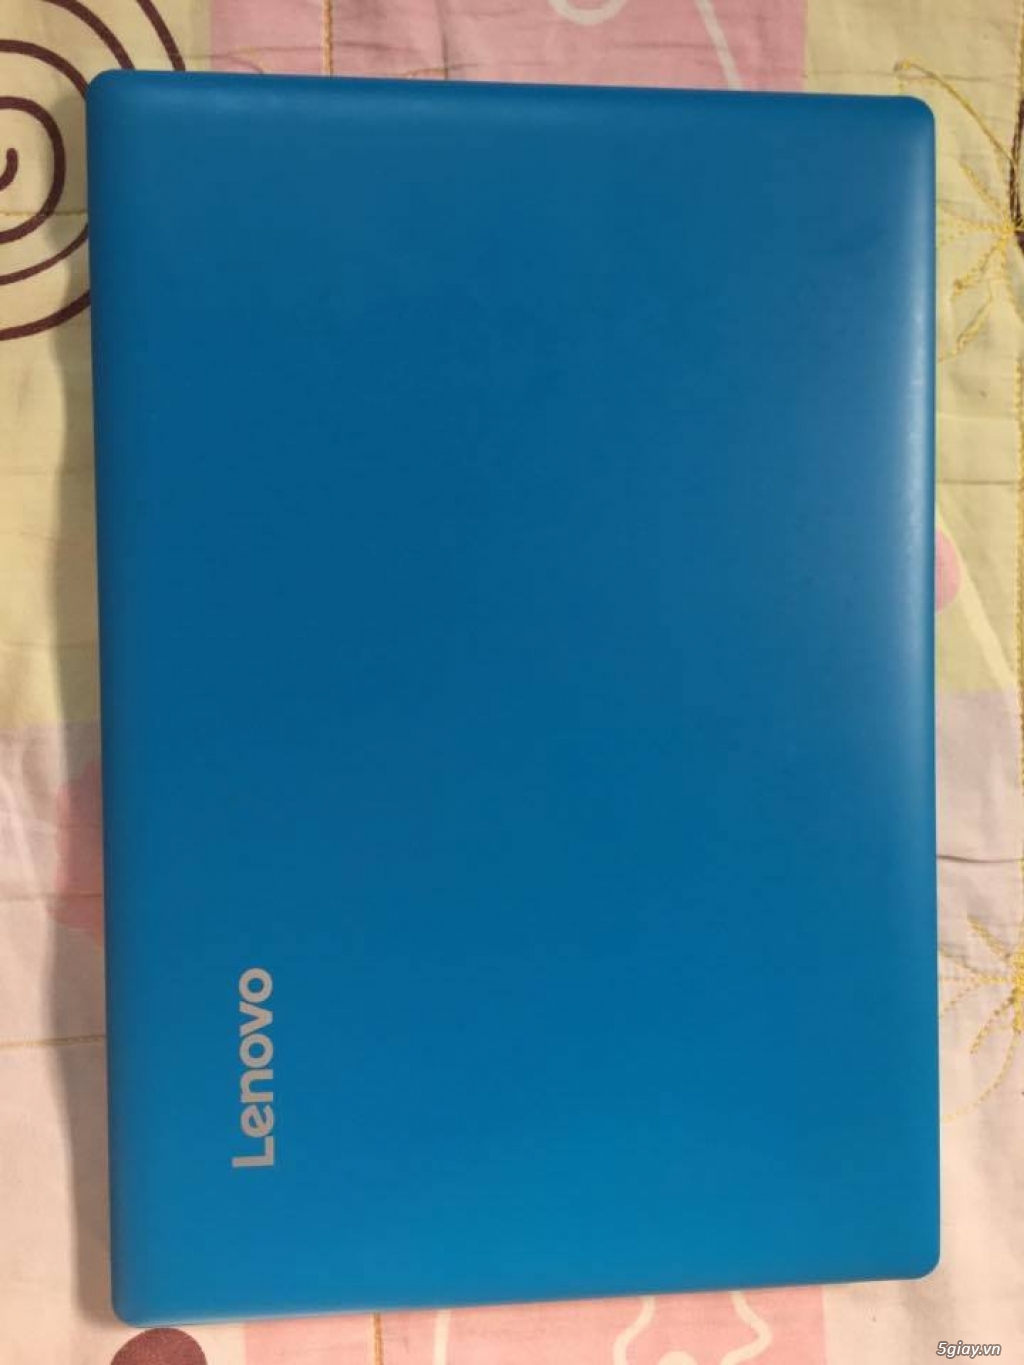 HCM- Cần bán laptop Lenovo ideapad 100S mới 99%